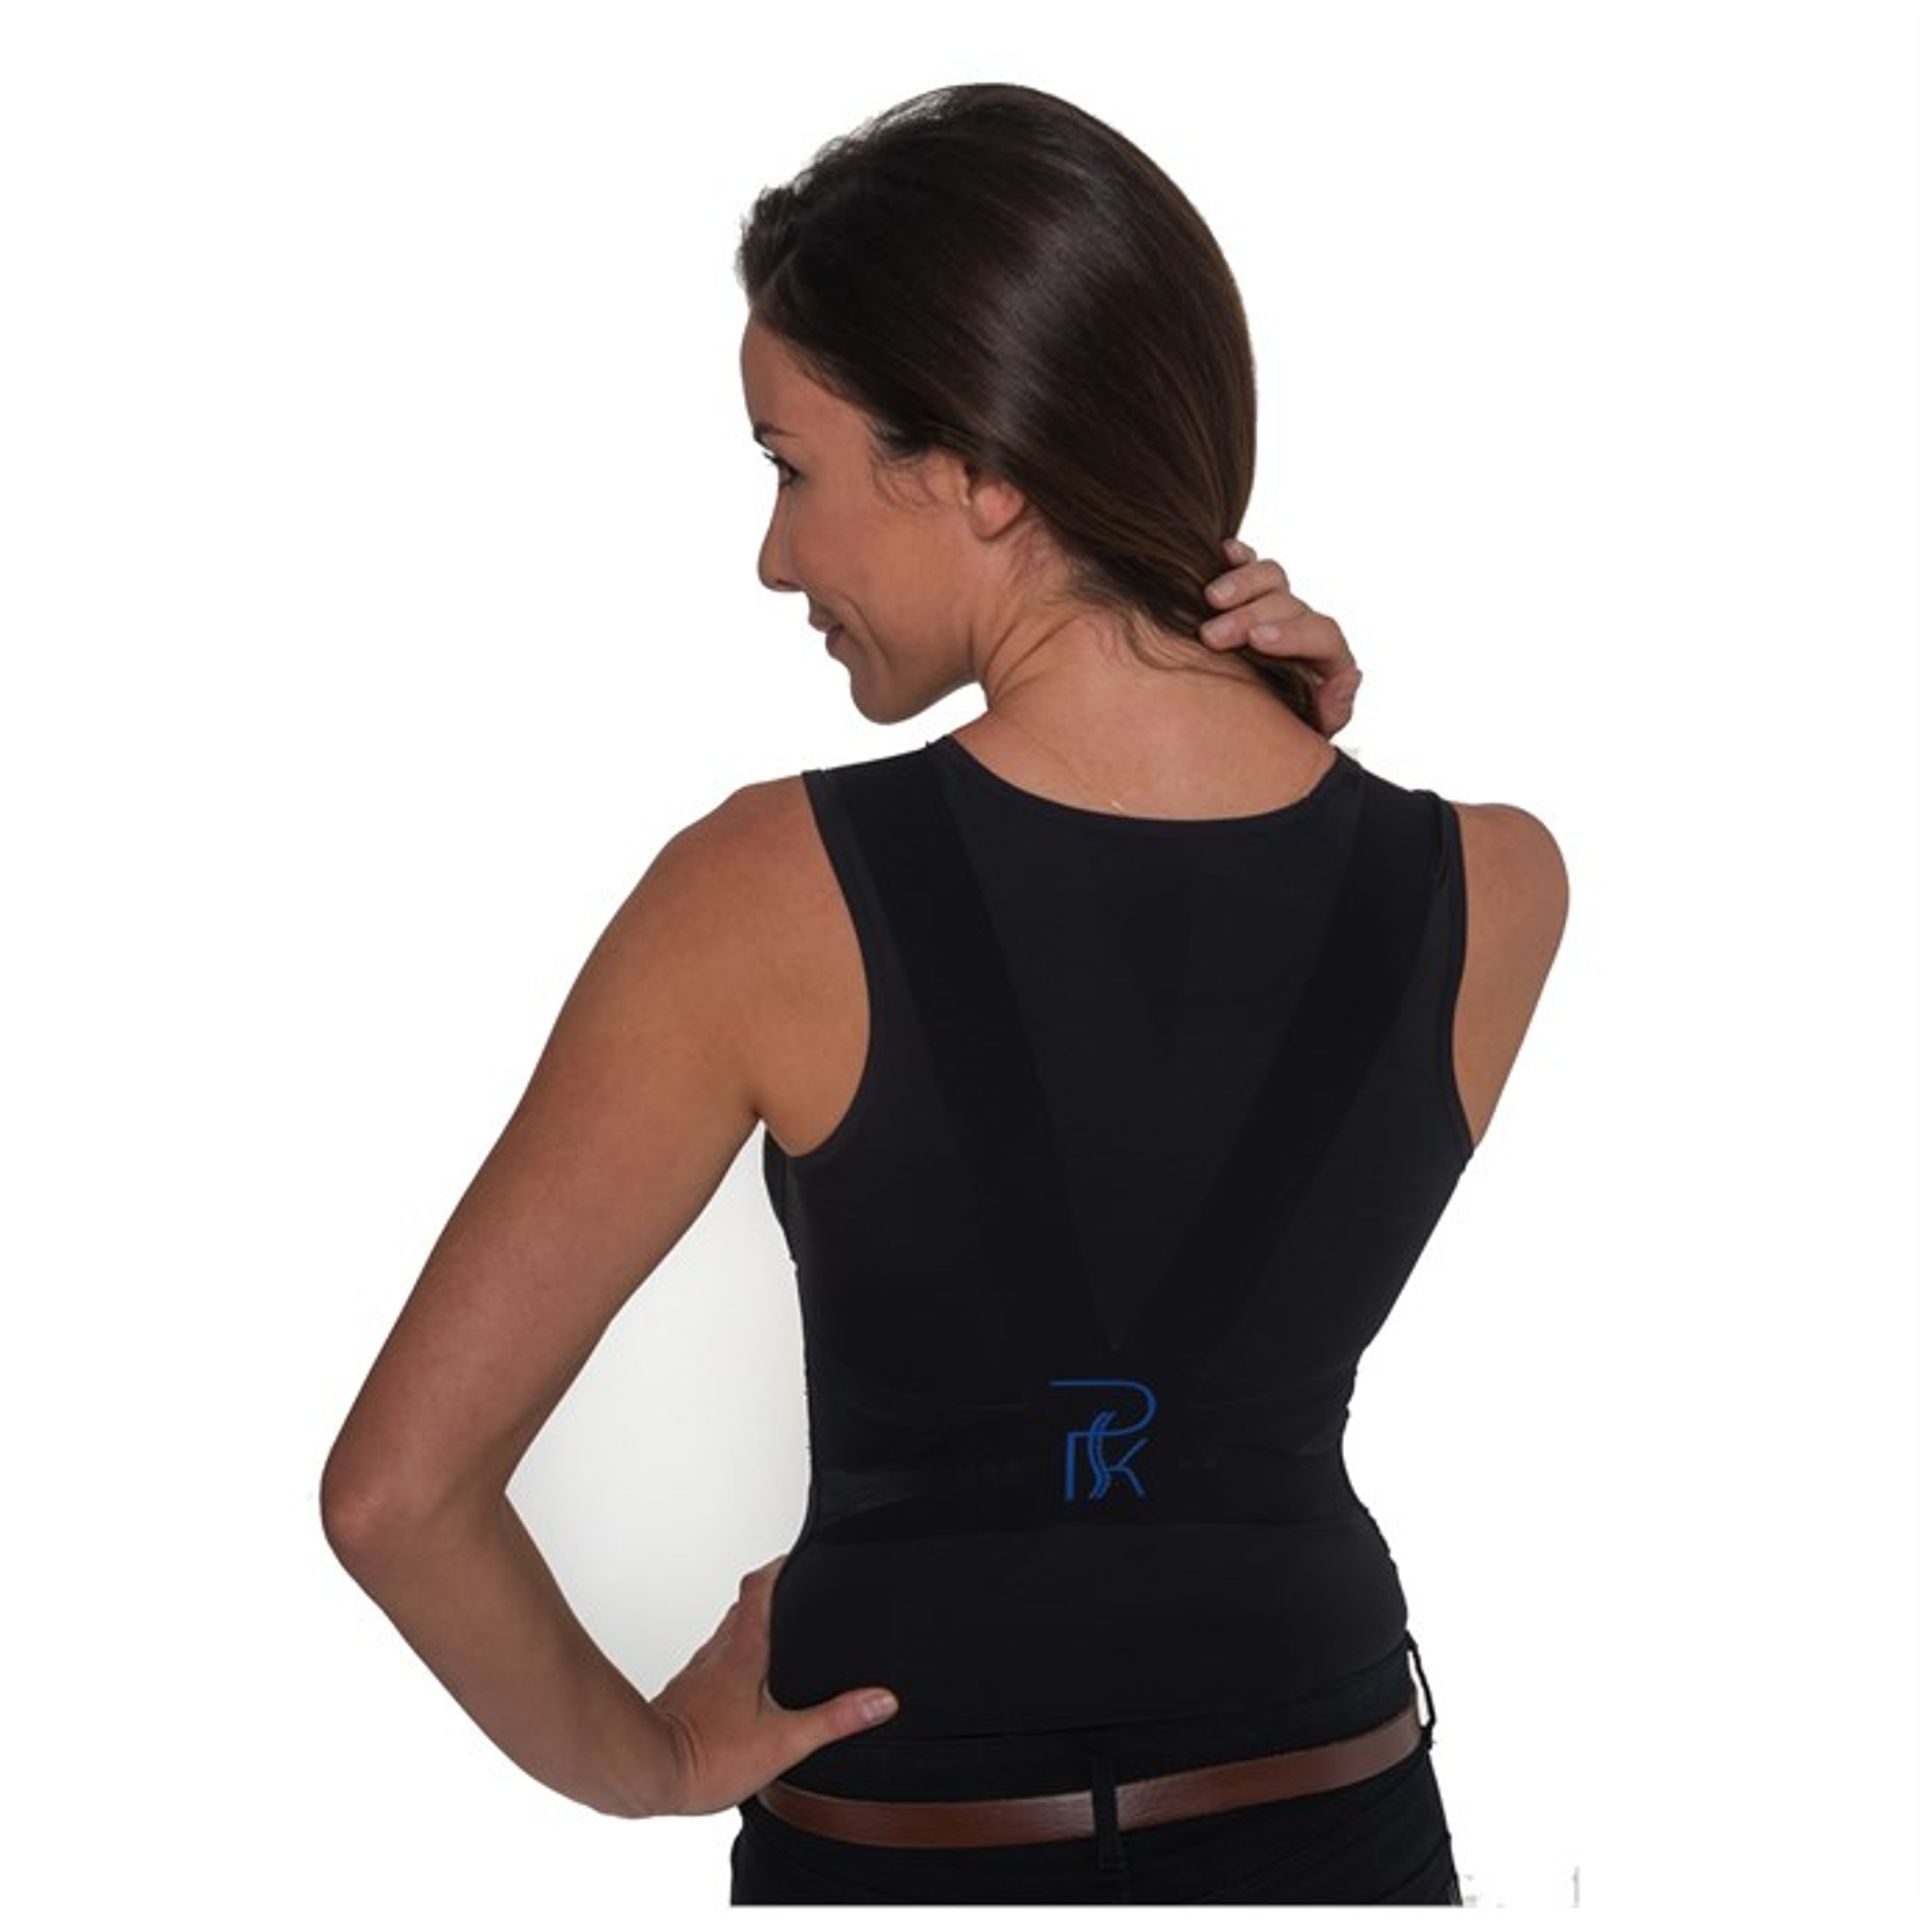 Solutions textiles pour redresser le dos